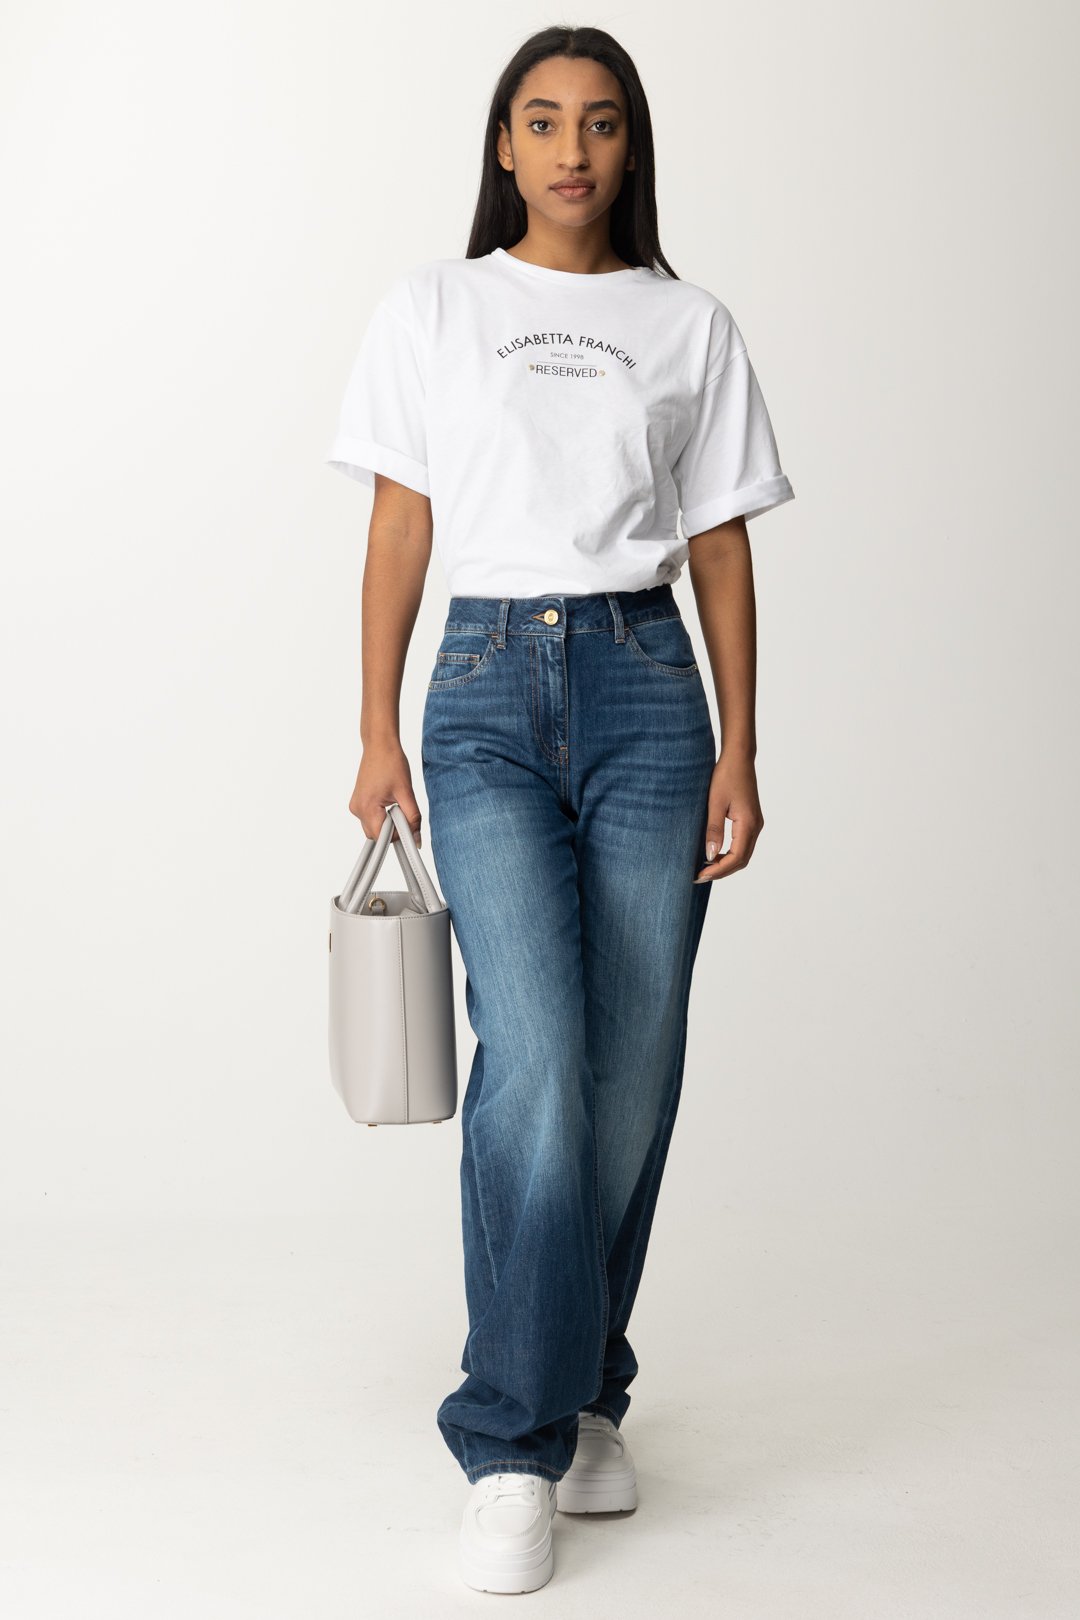 Vista previa: Elisabetta Franchi Camiseta con estampado Reserved Gesso